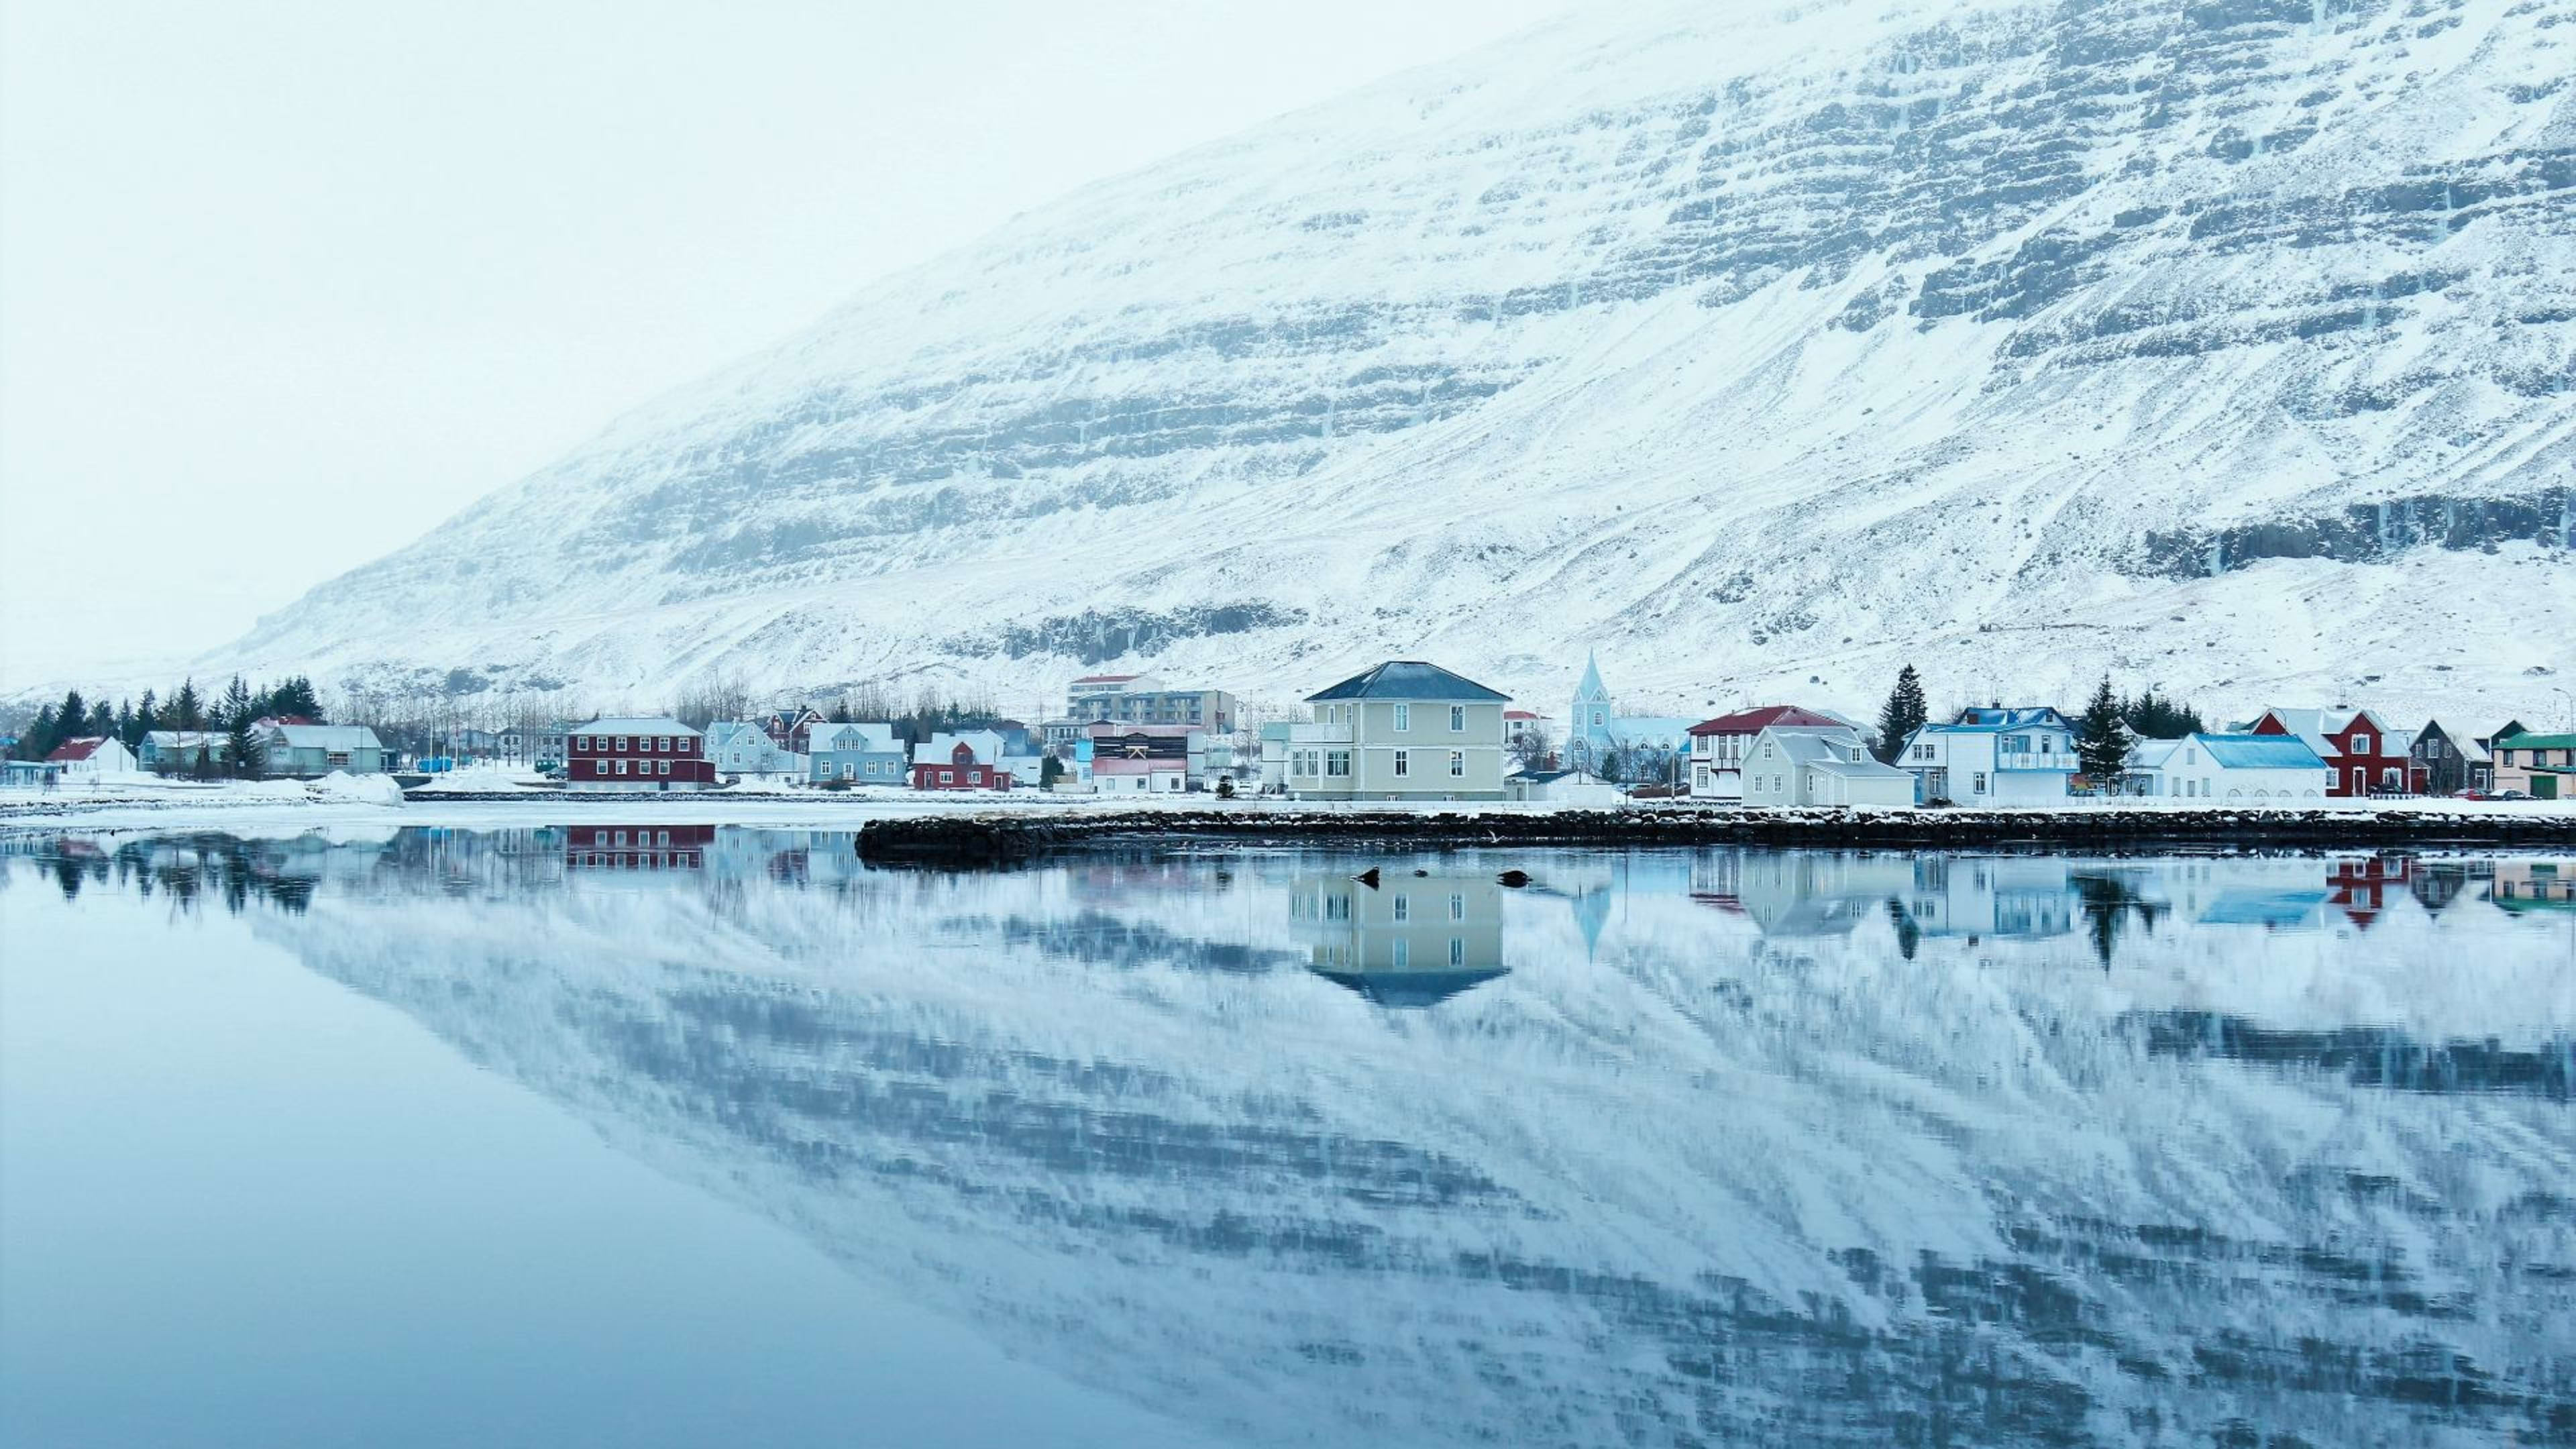 The town of Seyðisfjörður covered in snow